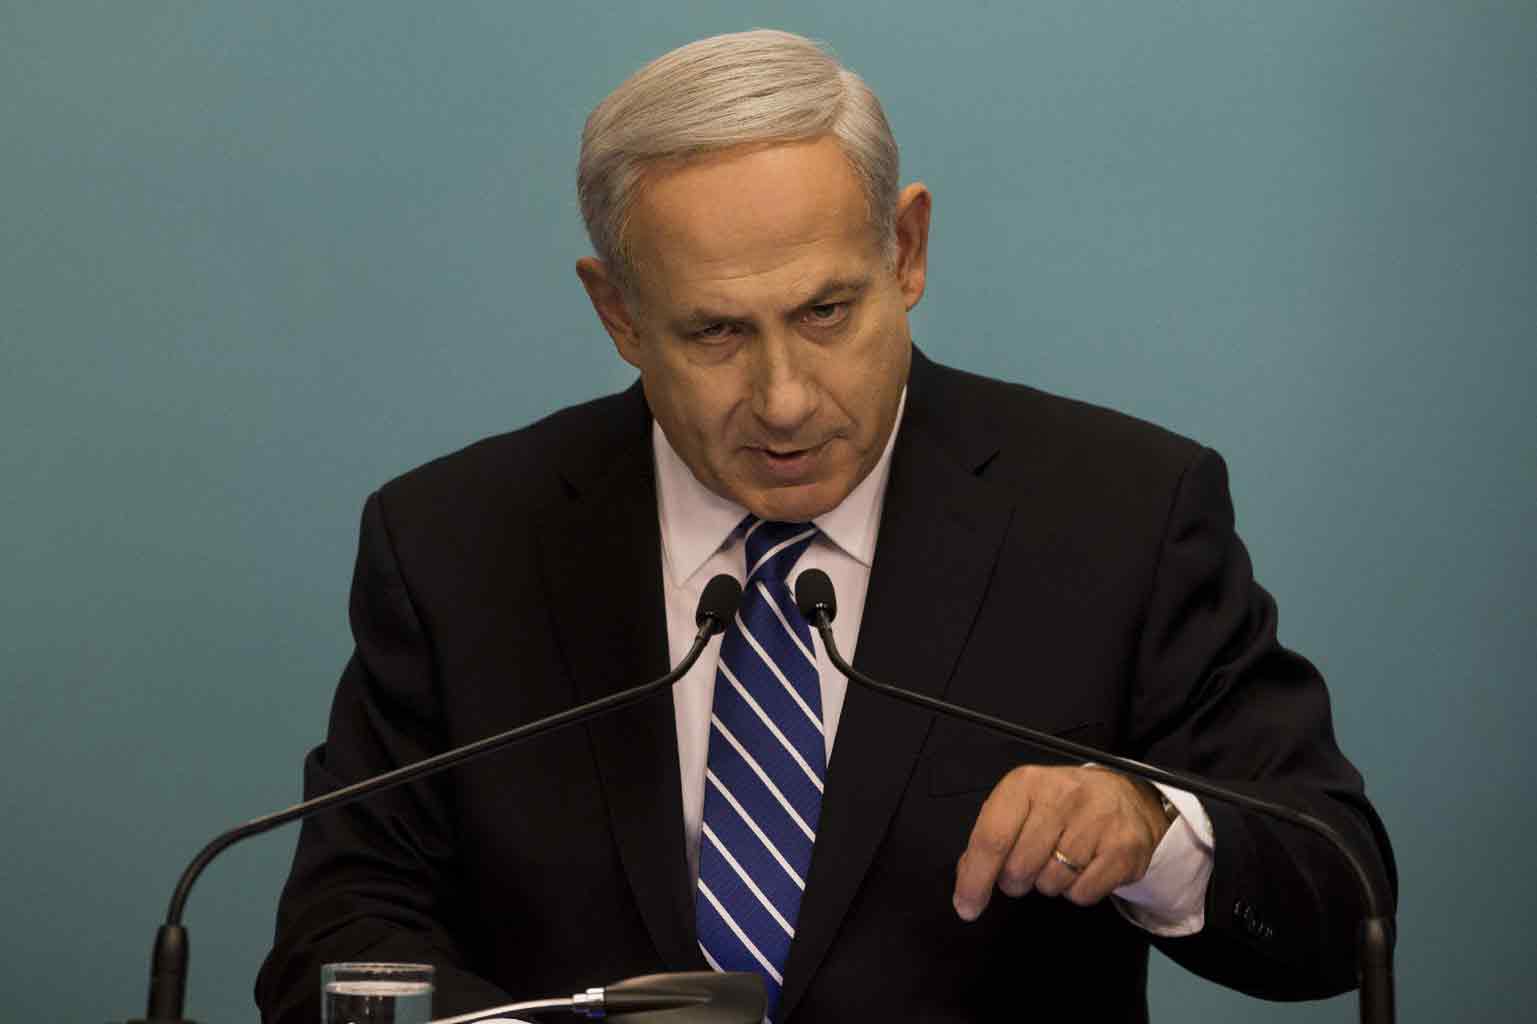 نتنياهو مخاطبًا يهود فرنسا: "إسرائيل هي وطنكم"